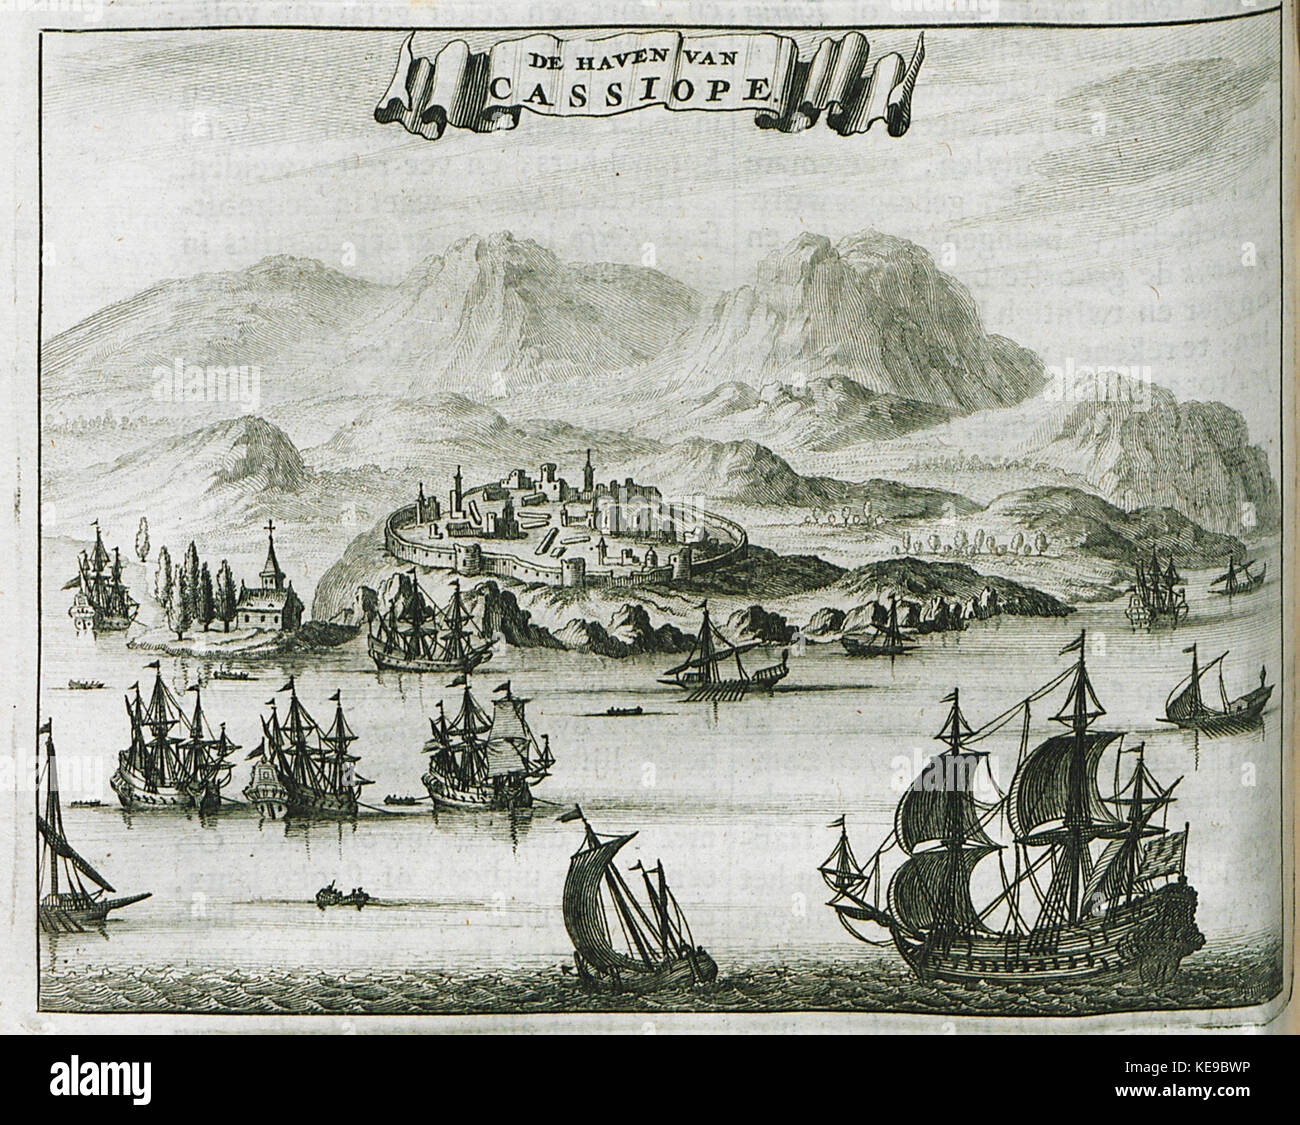 De Haven van Cassiope   Dapper Olfert   1688 Stock Photo